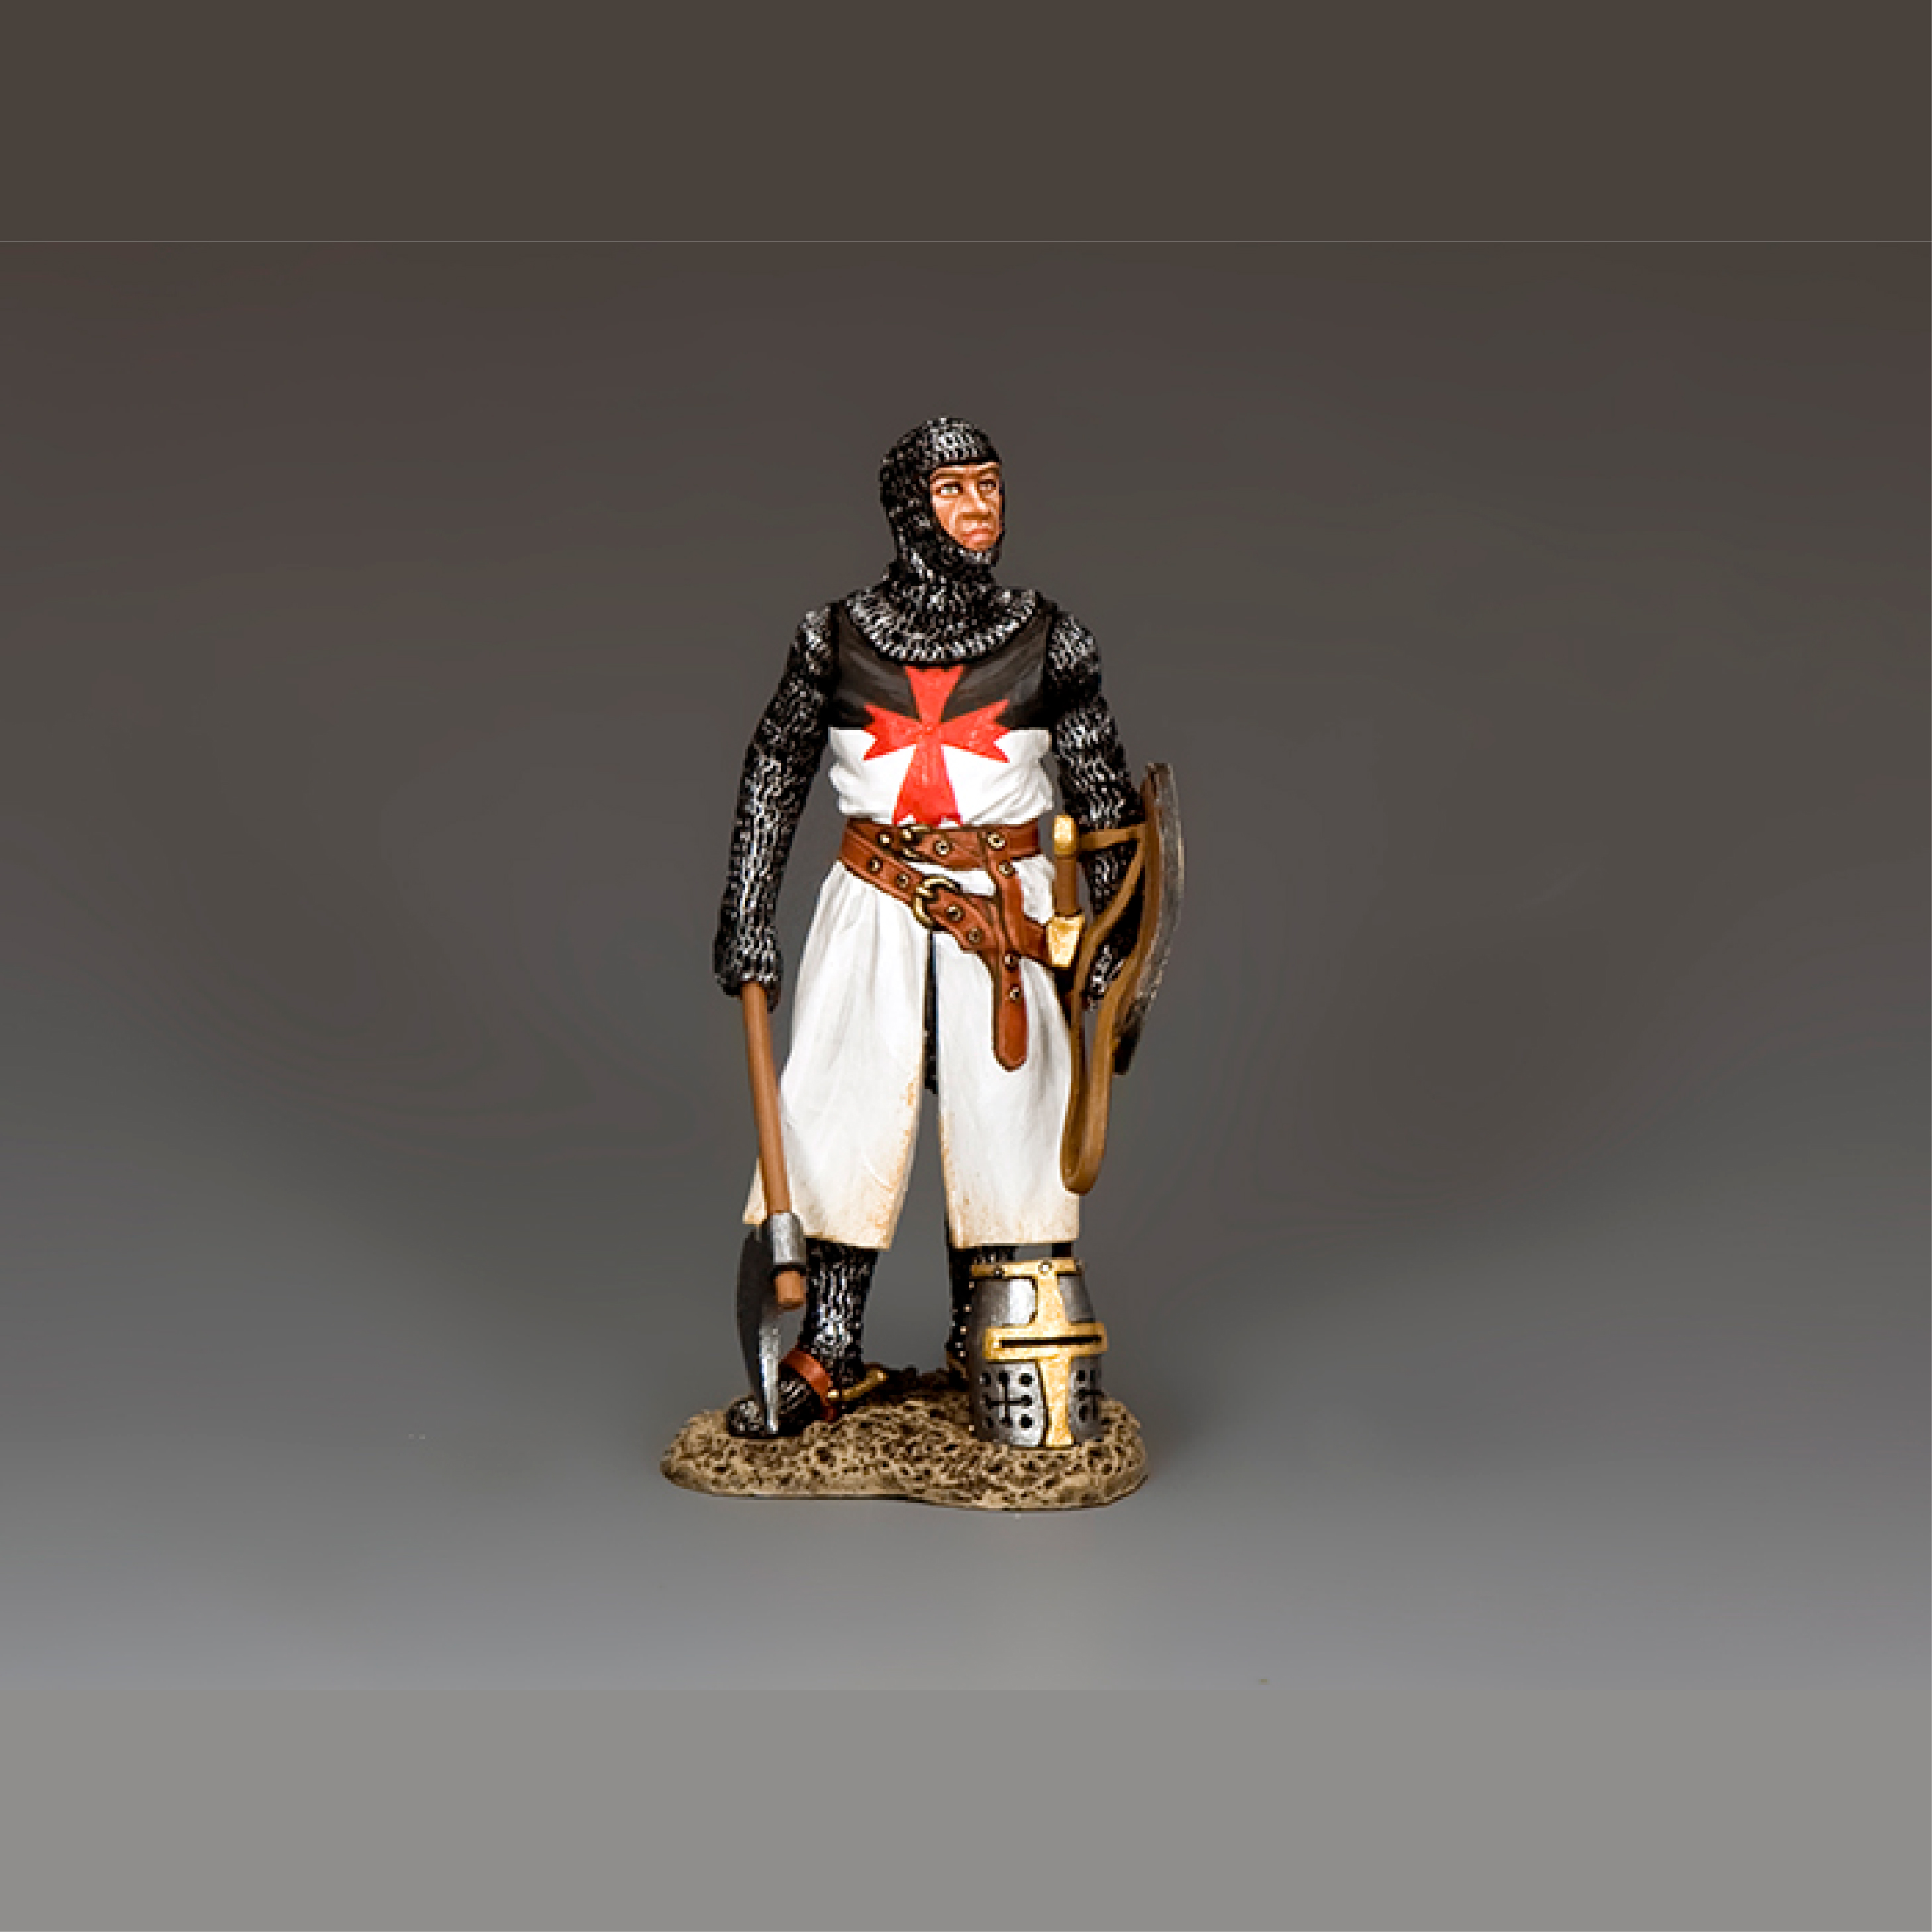 The Templar (Sir Brian de Bois Guilbert)